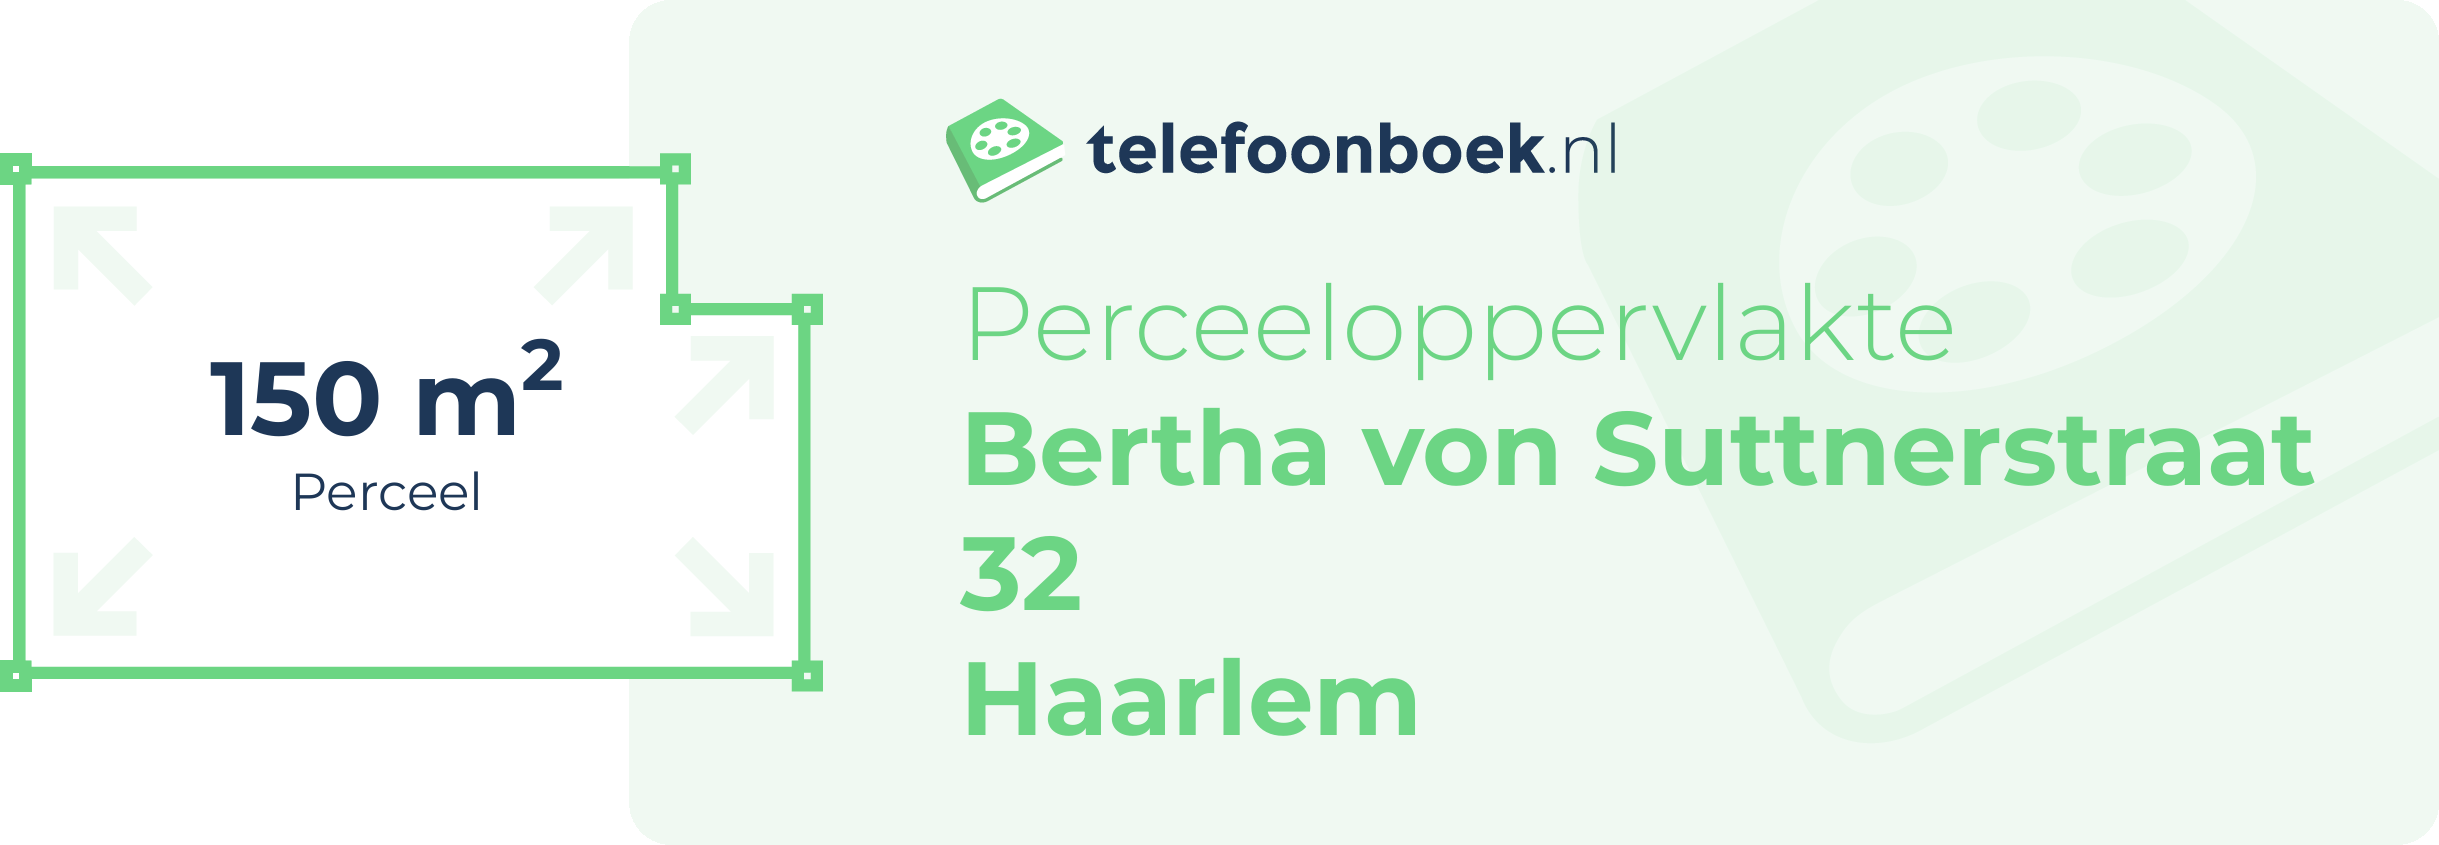 Perceeloppervlakte Bertha Von Suttnerstraat 32 Haarlem